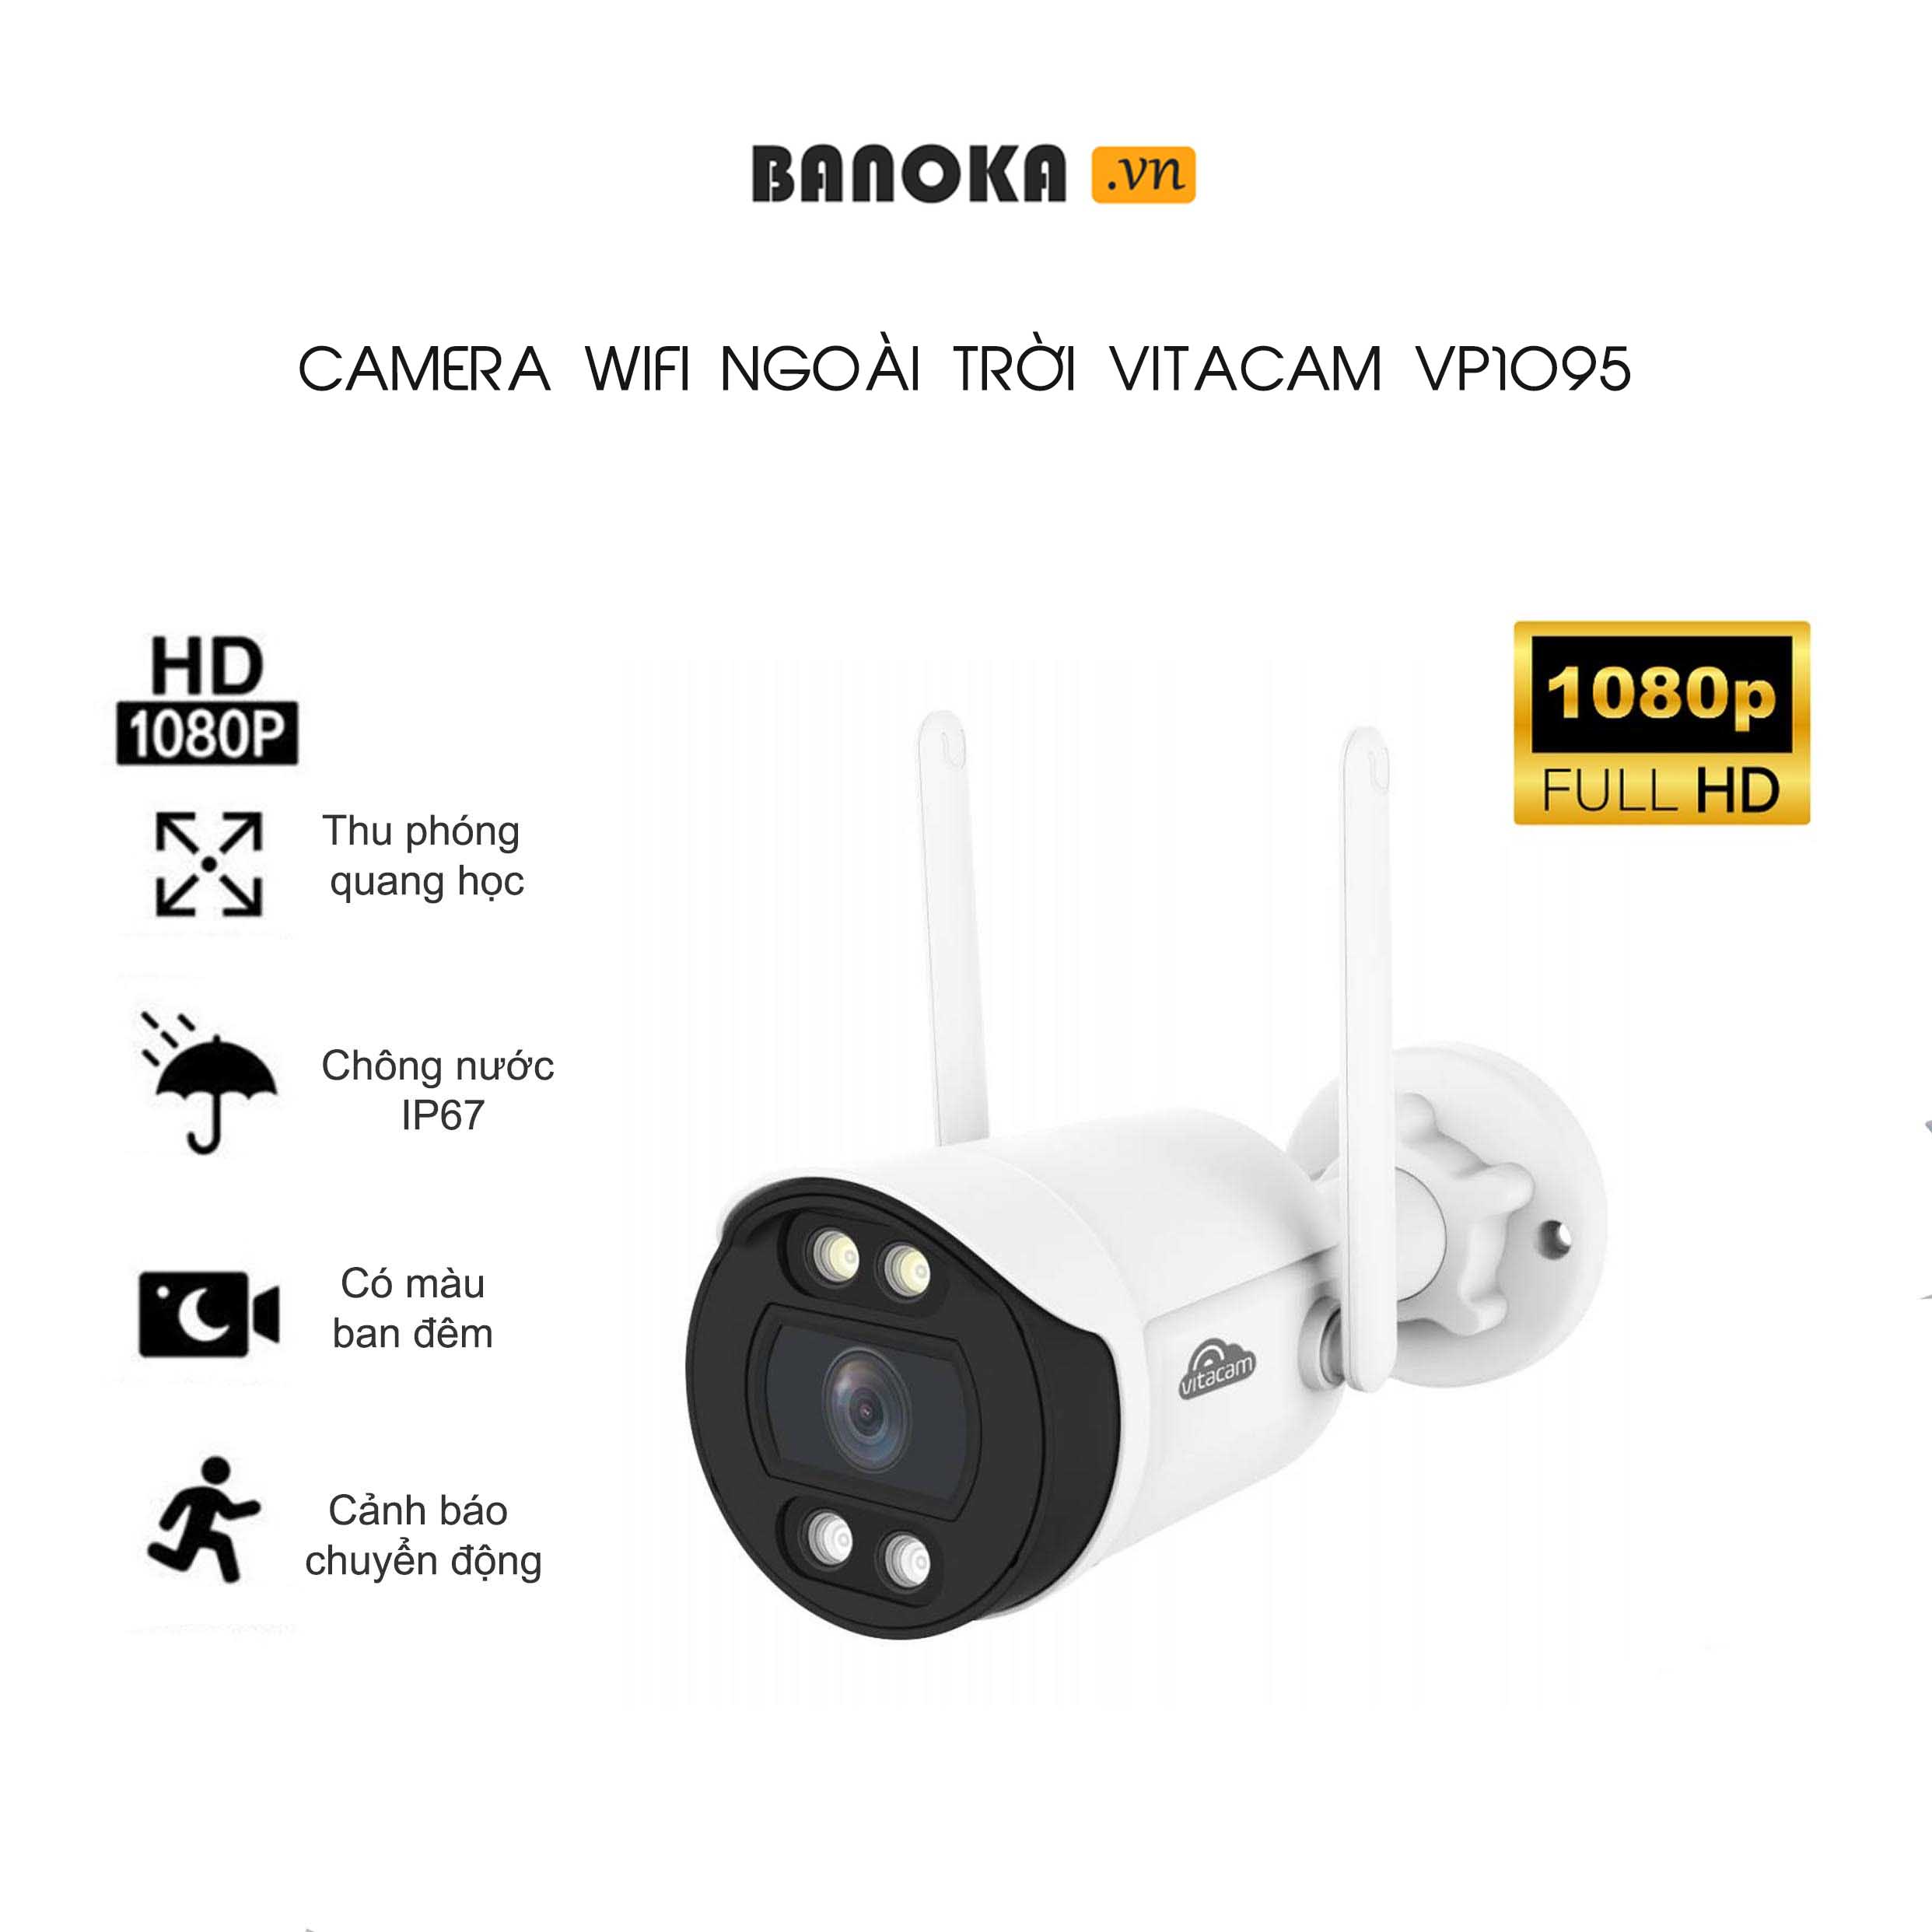 CAMERA NGOÀI TRỜI IP VITACAM VB1095 - 3MPX FULL HD 1080P | BH 2 NĂM